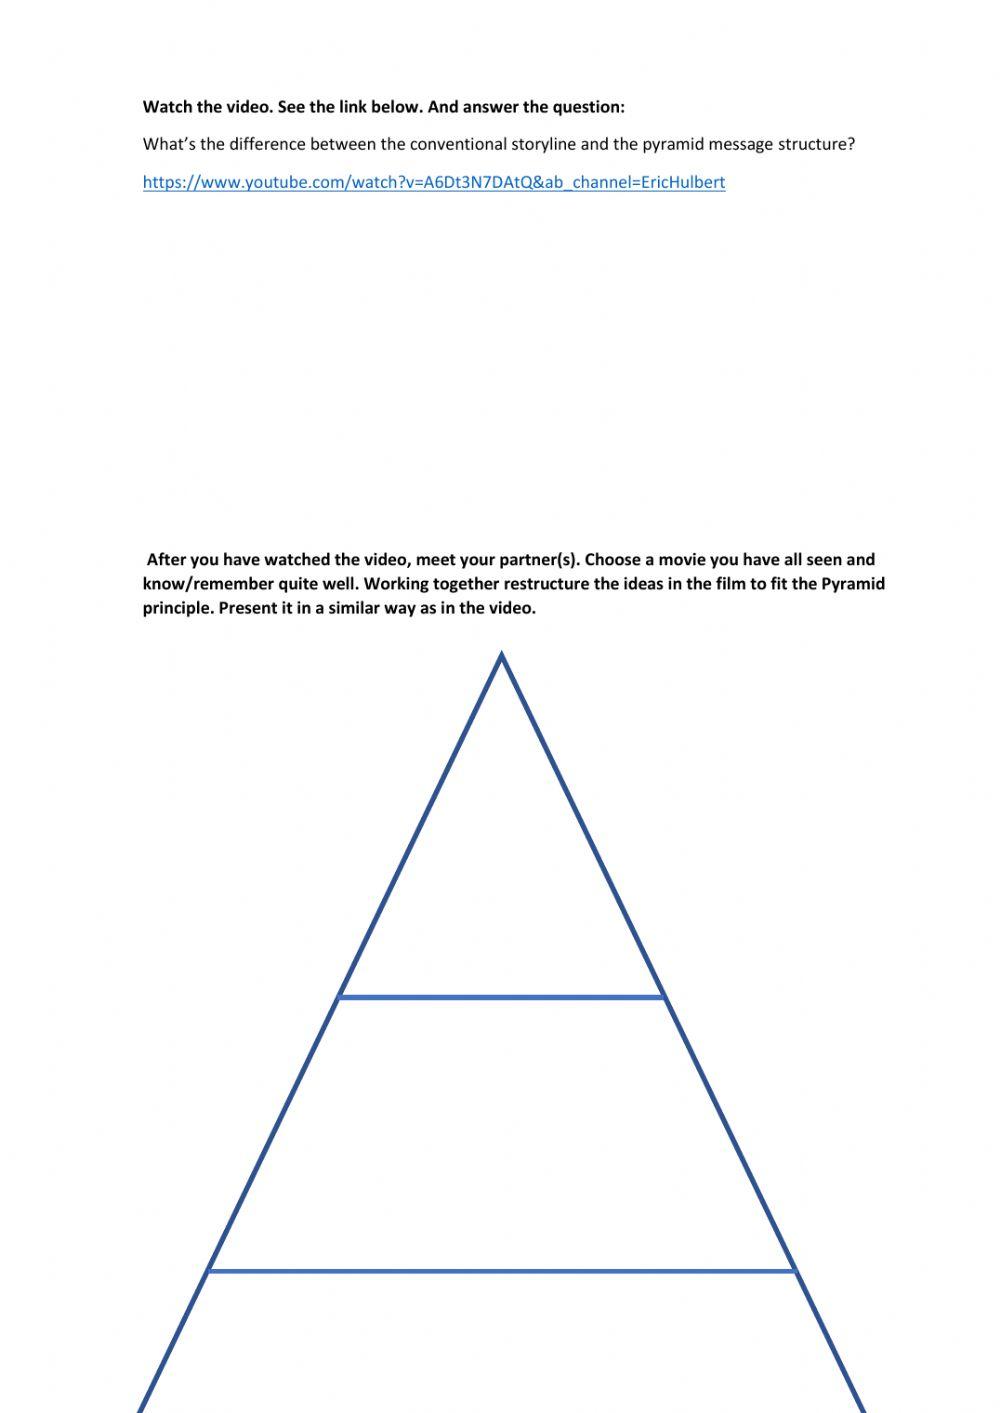 A movie in pyramid principle 1